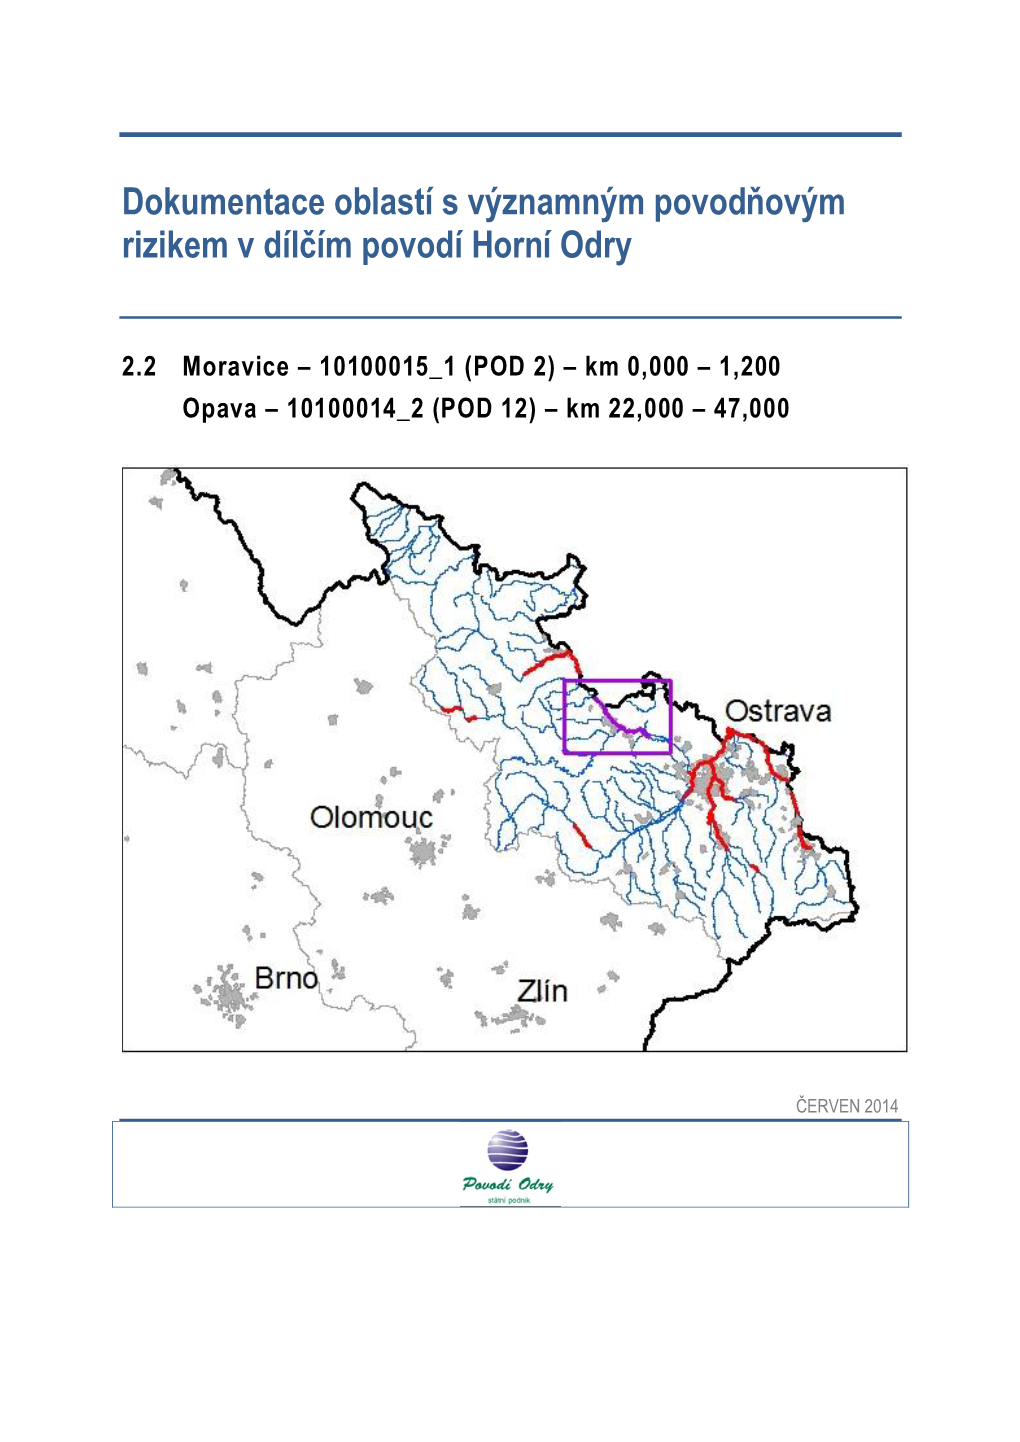 Dokumentace Oblastí S Významným Povodňovým Rizikem V Dílčím